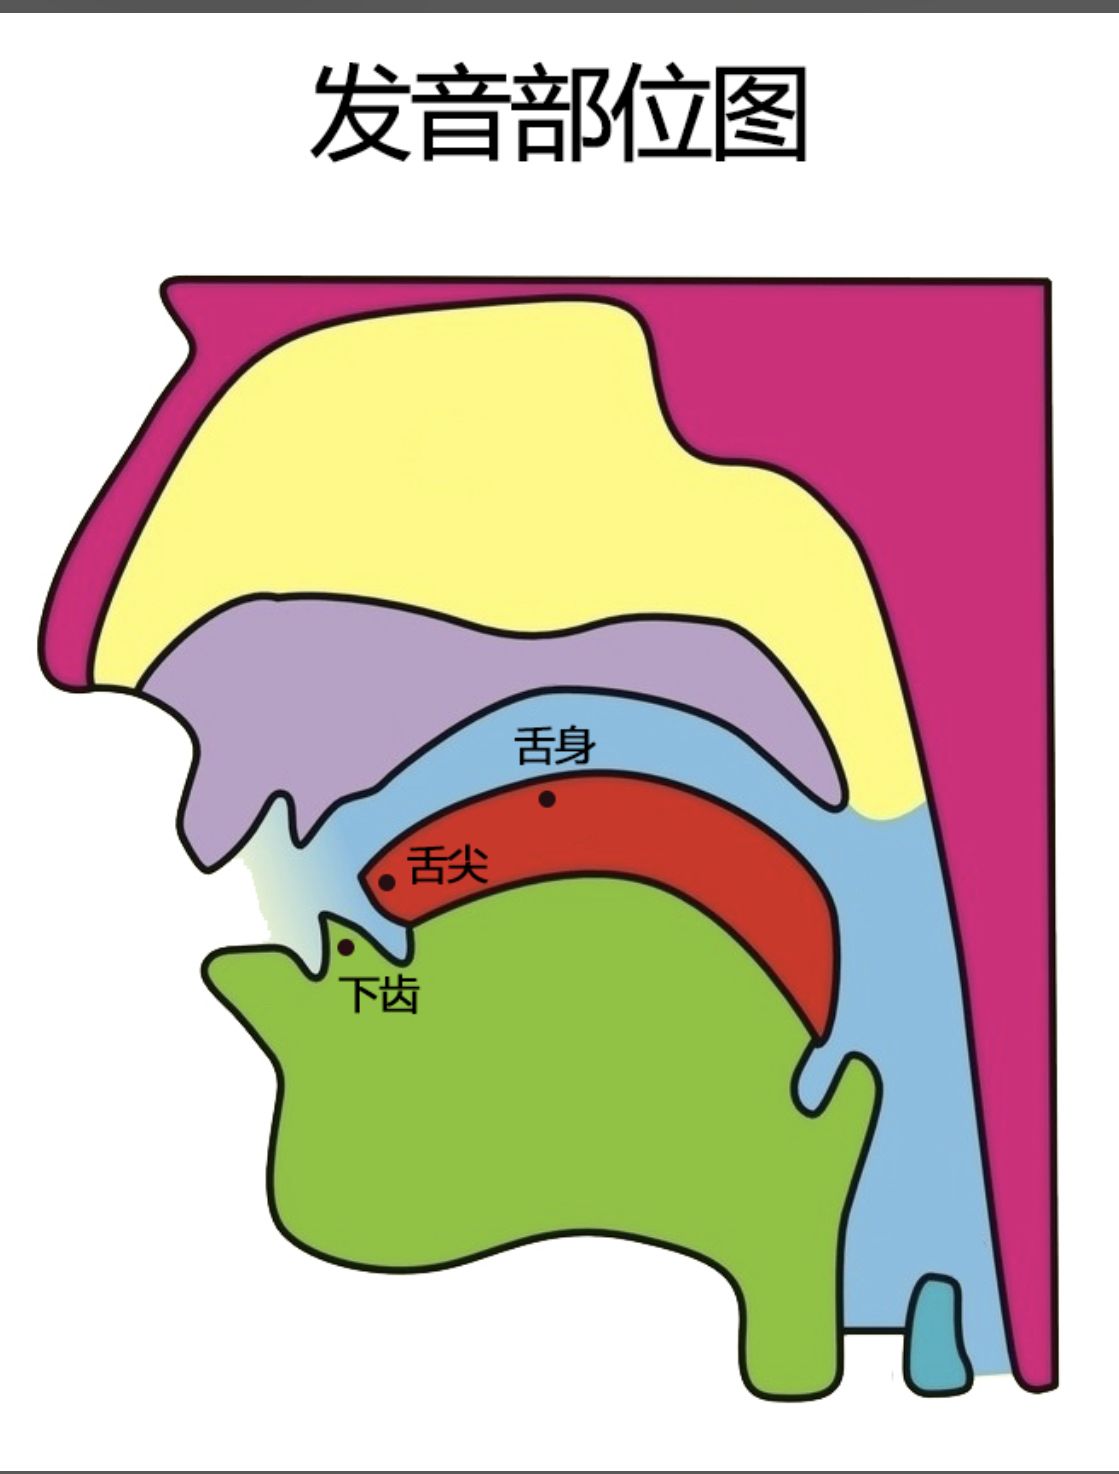 八个基本元音舌位图图片